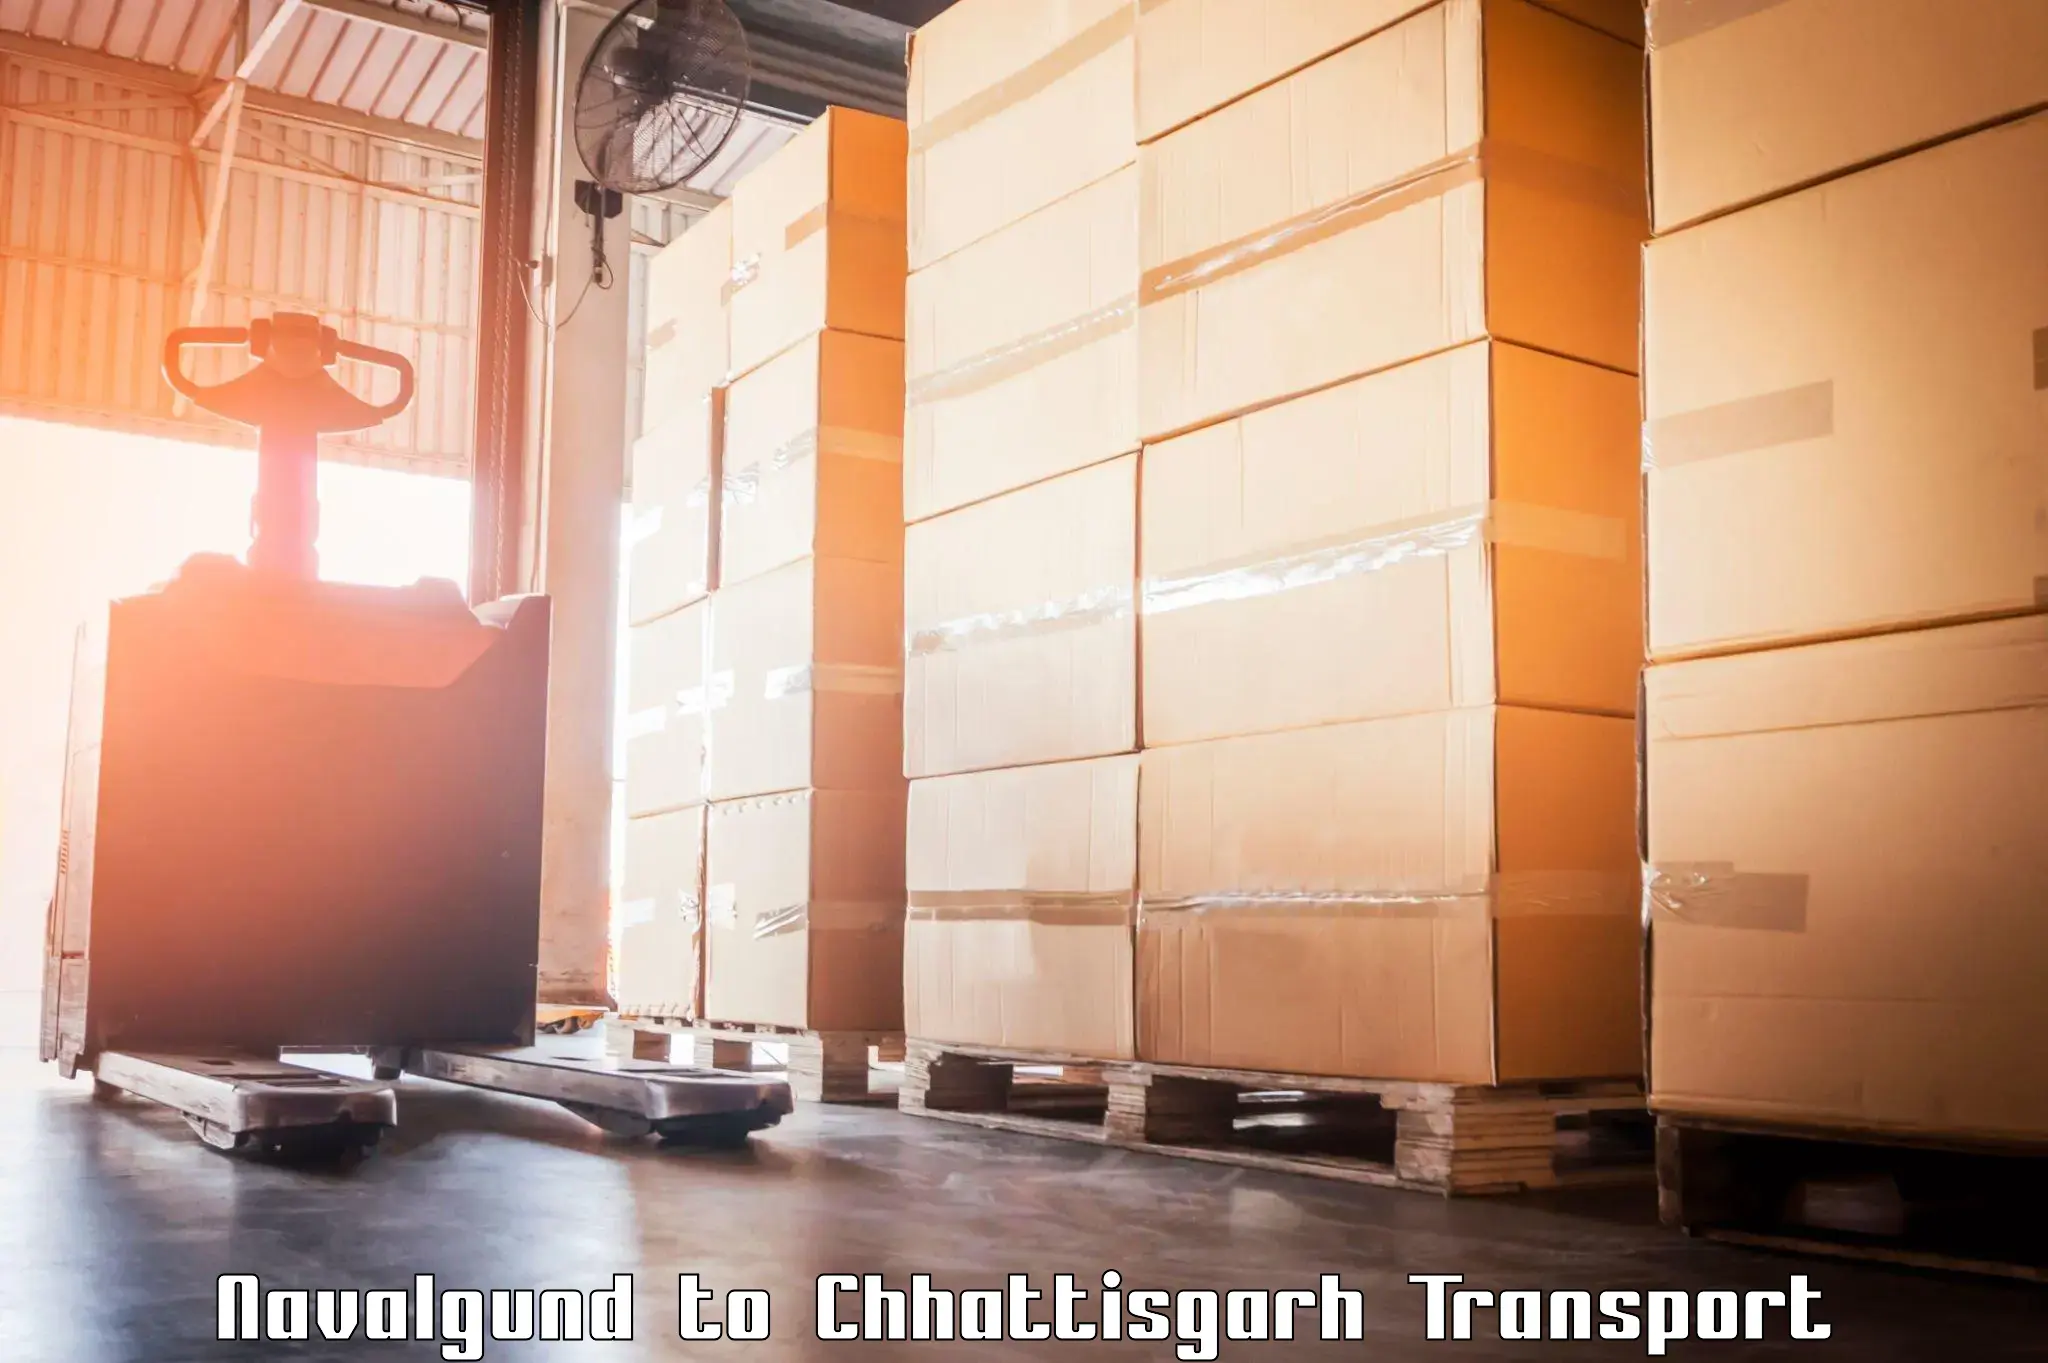 Land transport services Navalgund to Chhattisgarh